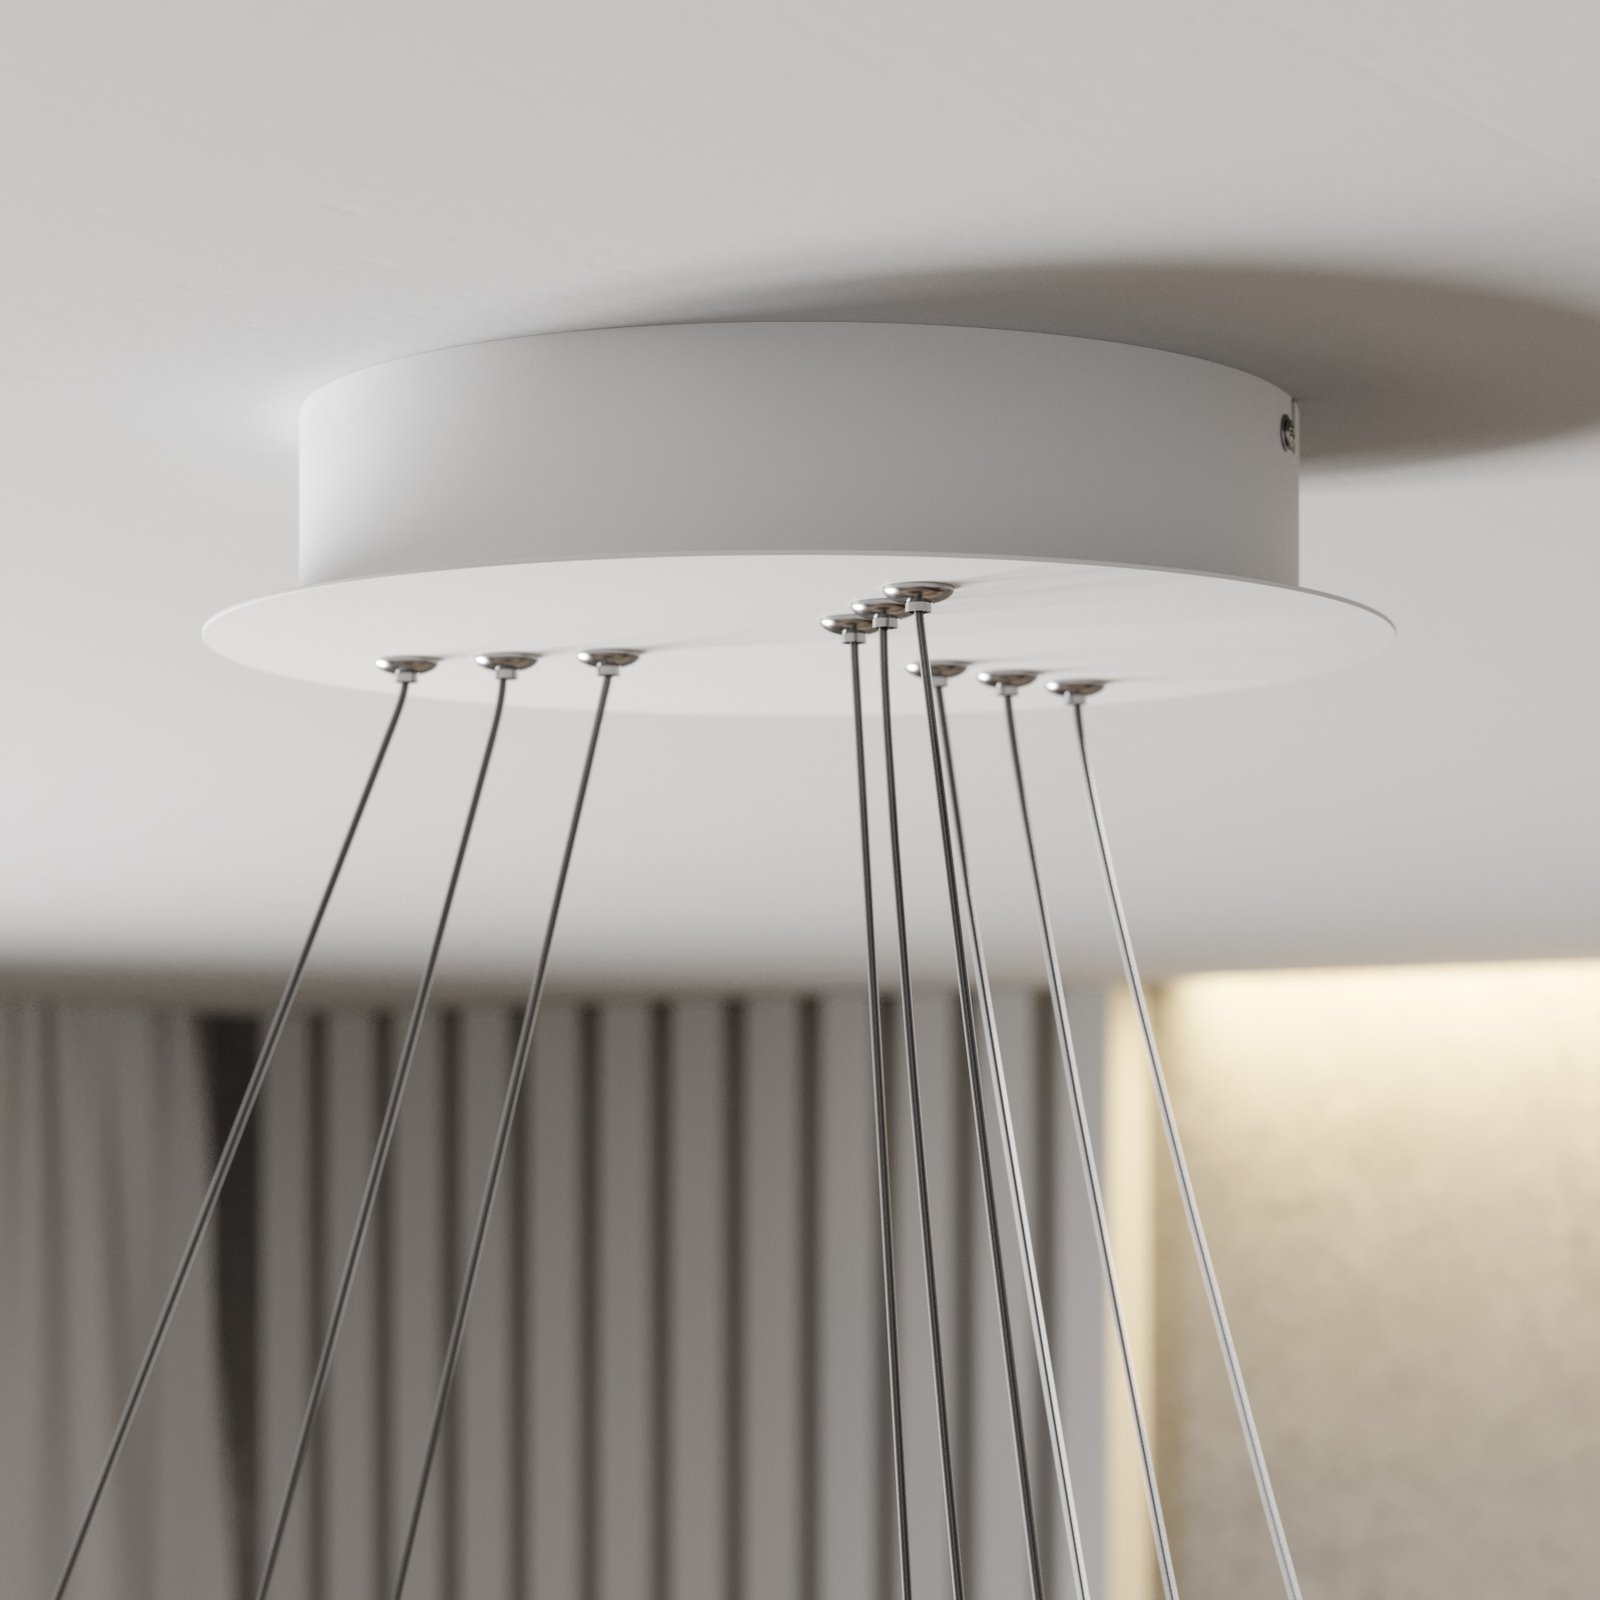 LED hanglamp Ezana gemaakt van drie ringen, wit